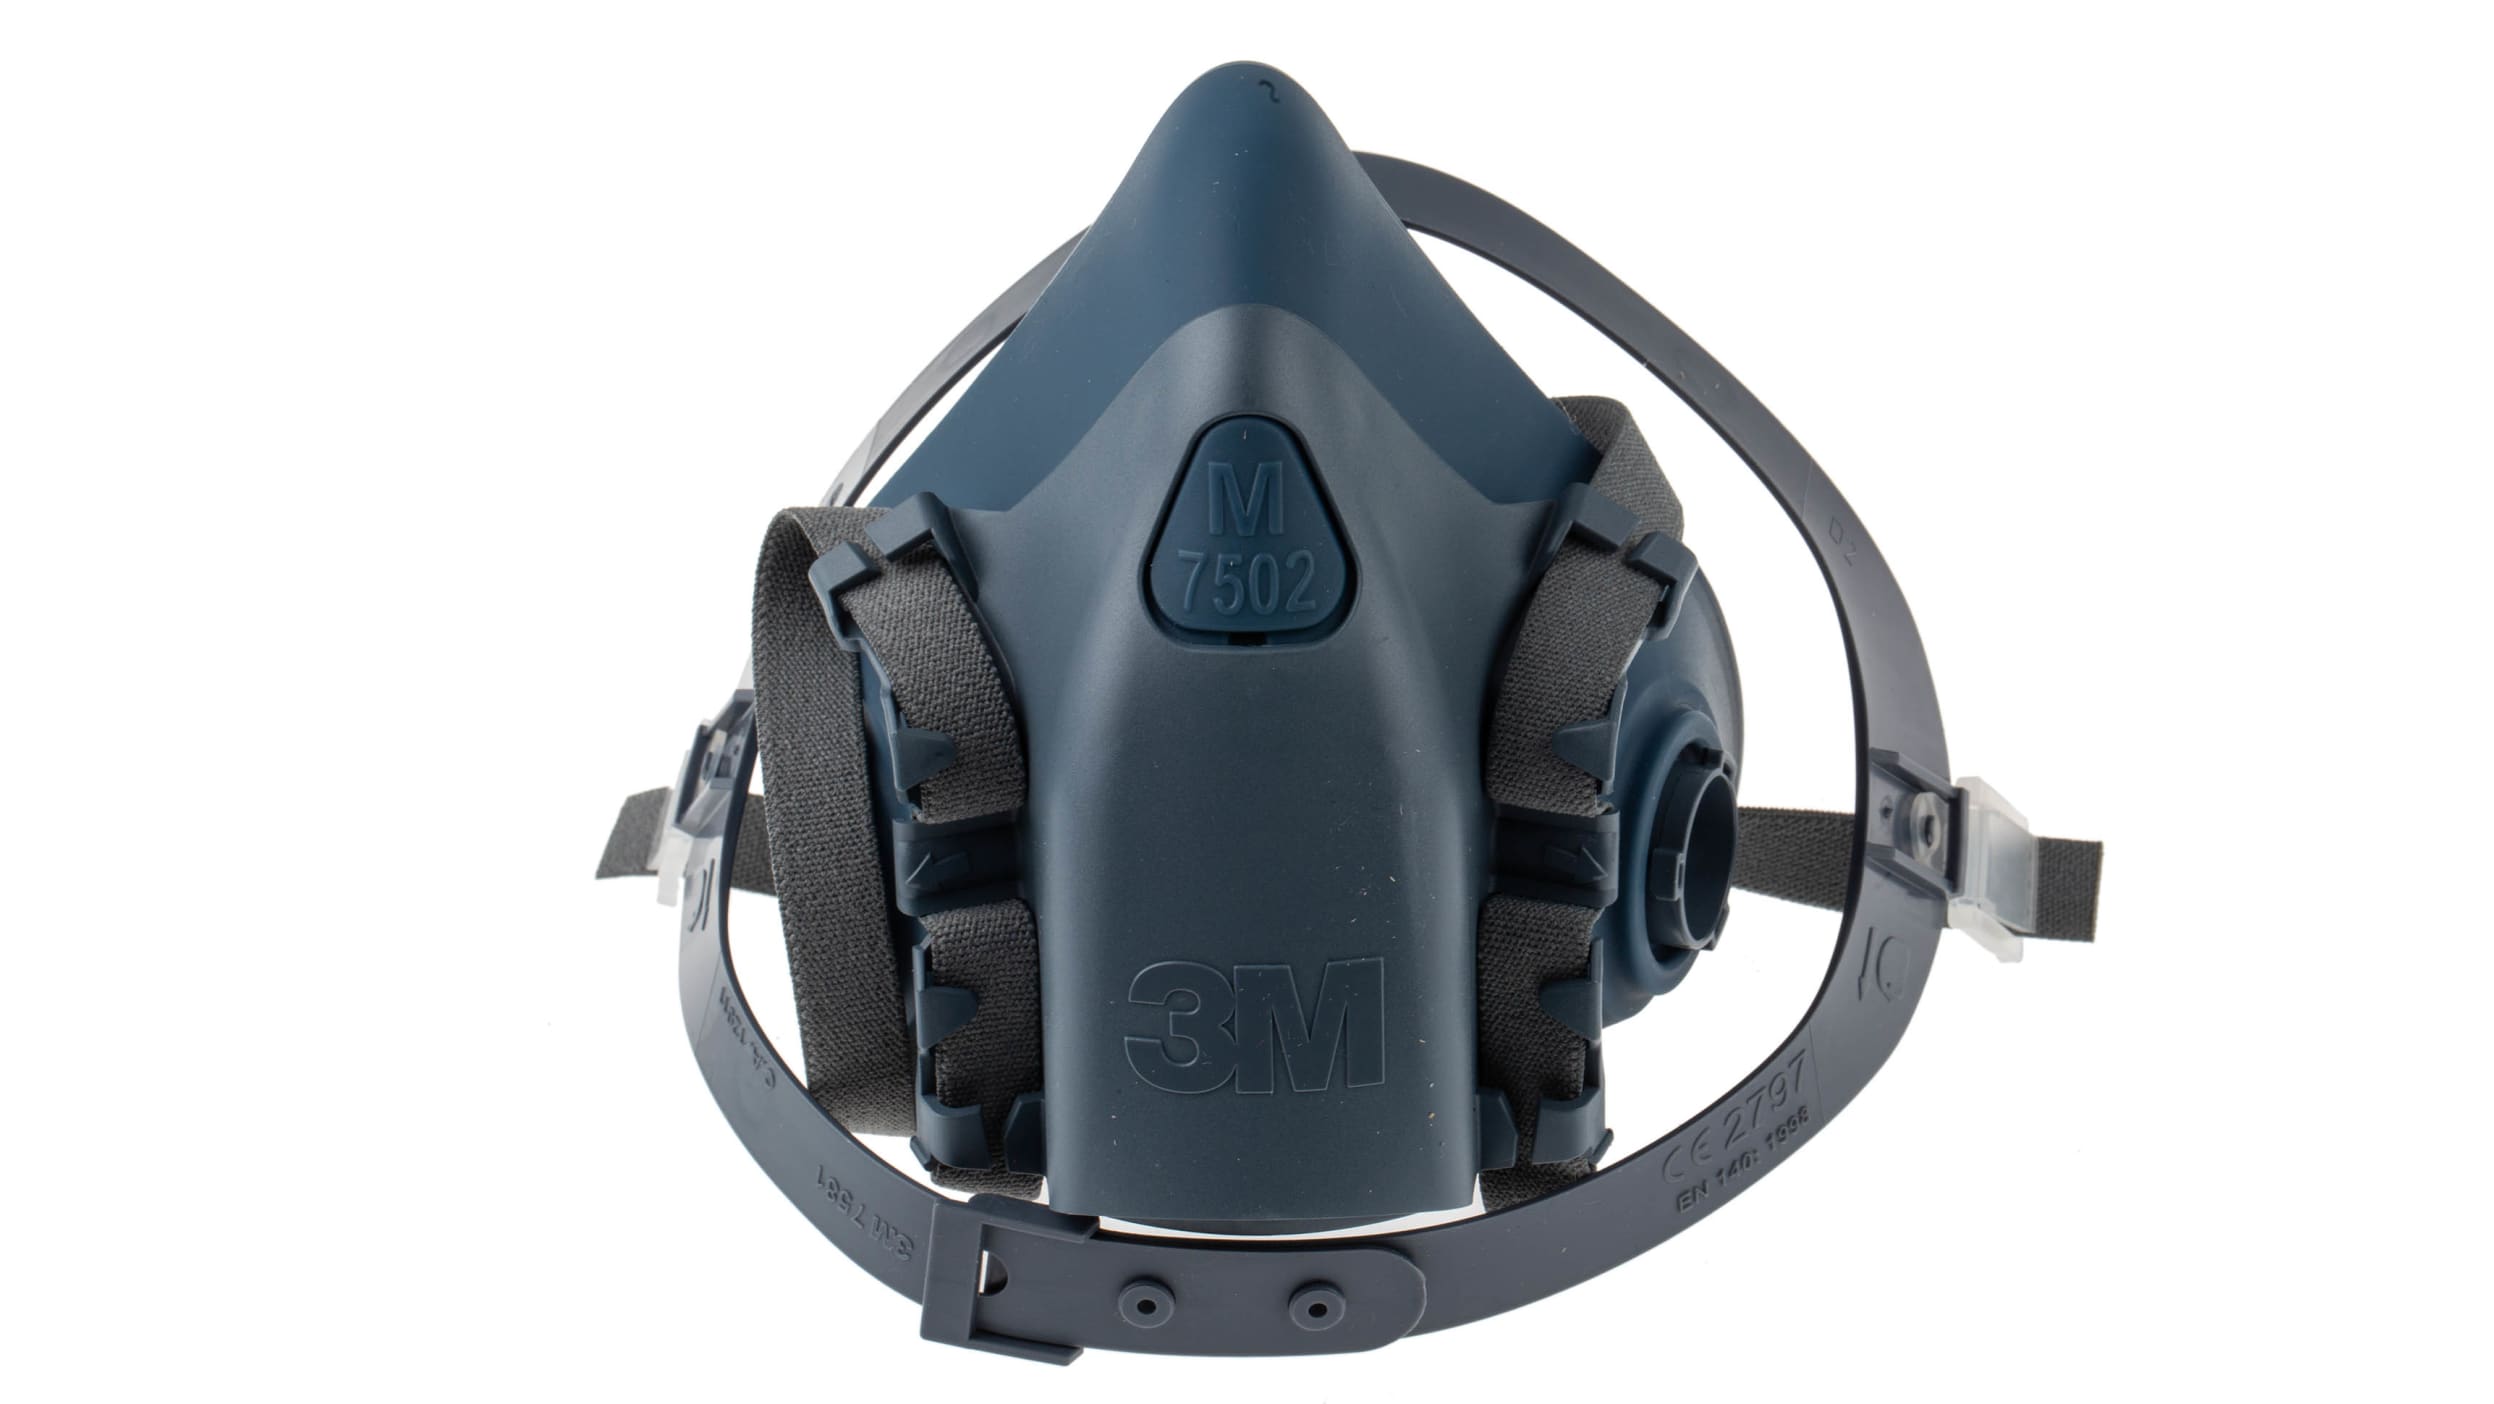 Demi-masque de protection respiratoire de la série 7500 de 3M. Large.